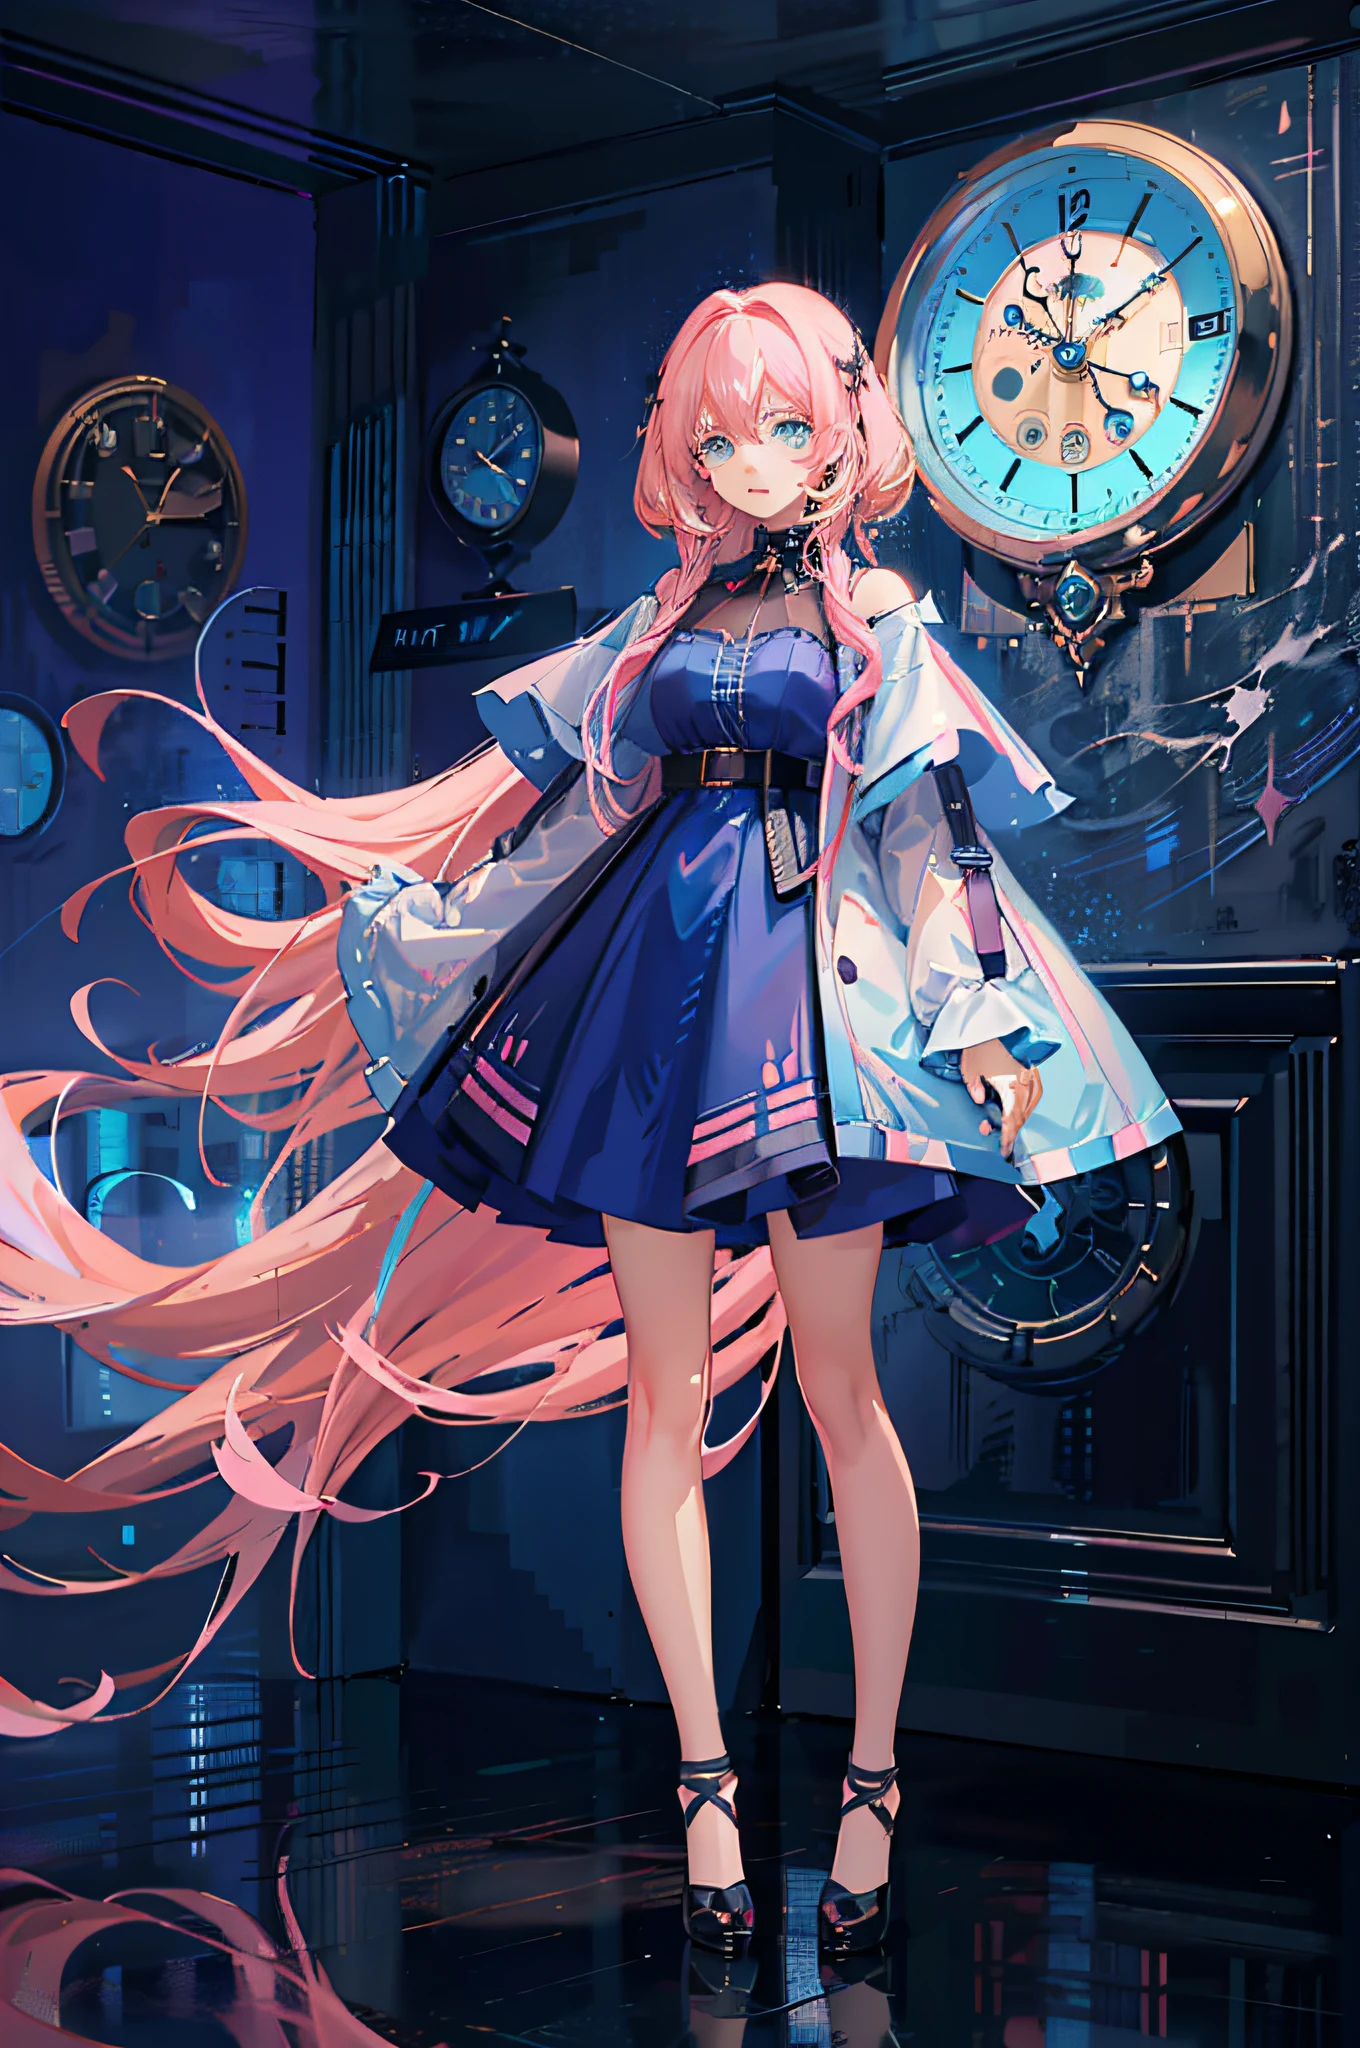 (Obra maestra de anime CG ultra detallada, estilo animado 4k) chica anime con (pelo largo y rosa+ojos cian) parado frente a un (Elegante reloj de pared)+(fondo borroso), usando uno (Impresionante vestido azul) y emanando un aura mágica irresistible.